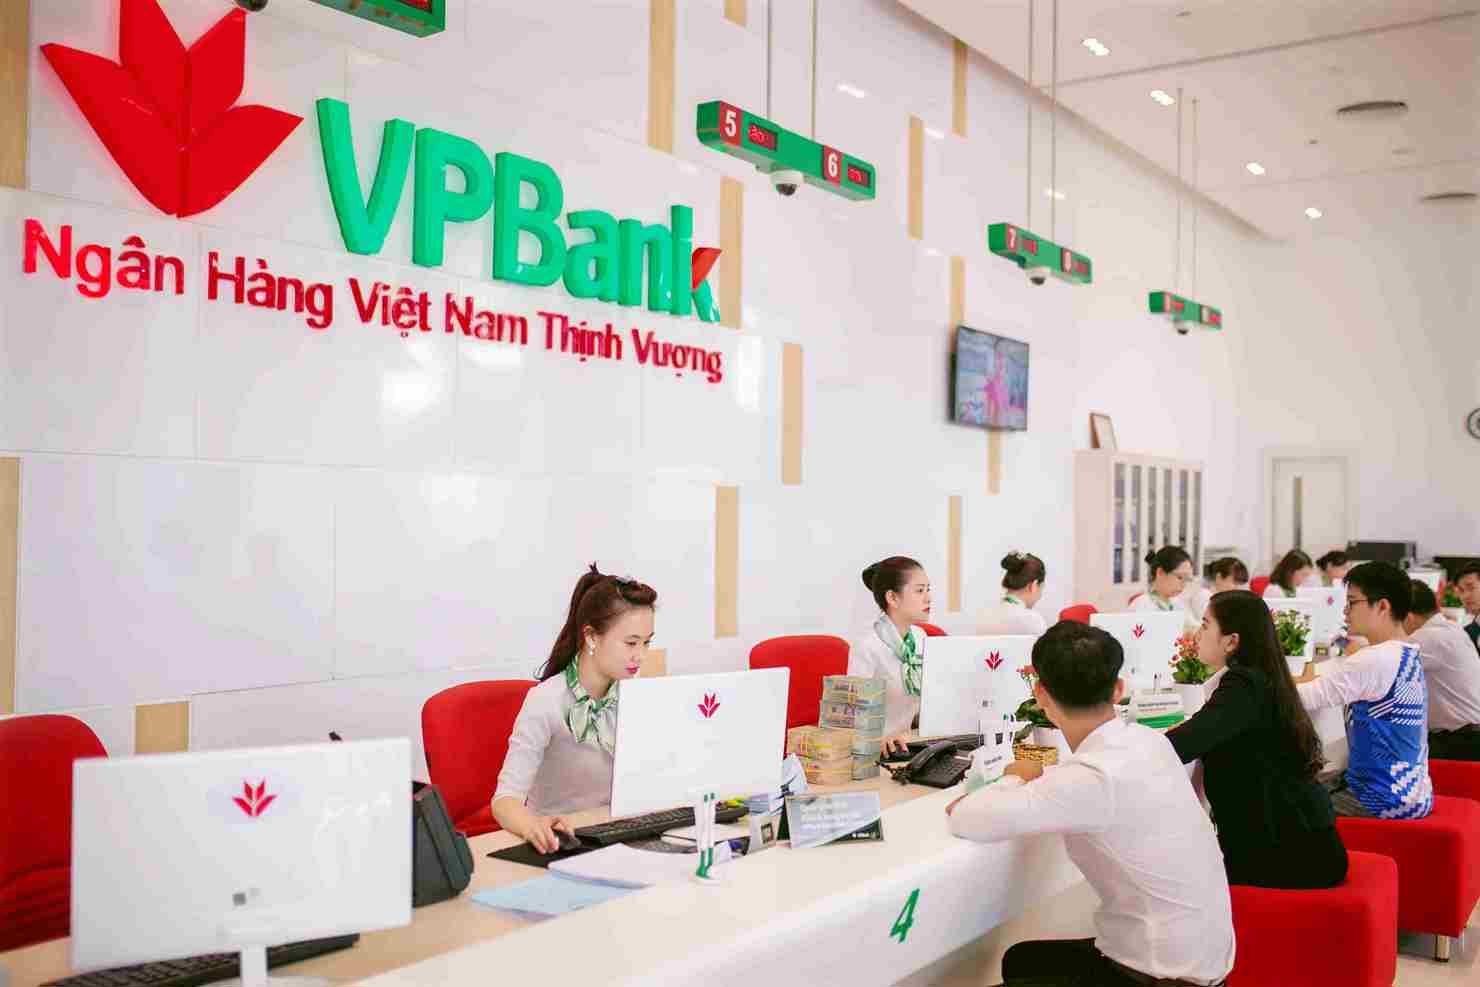 Tổng tài sản hợp nhất tính đến ngày 31/12/2017 của VPBank đạt 277.750 tỷ đồng, tăng 21% so với cuối năm 2016.